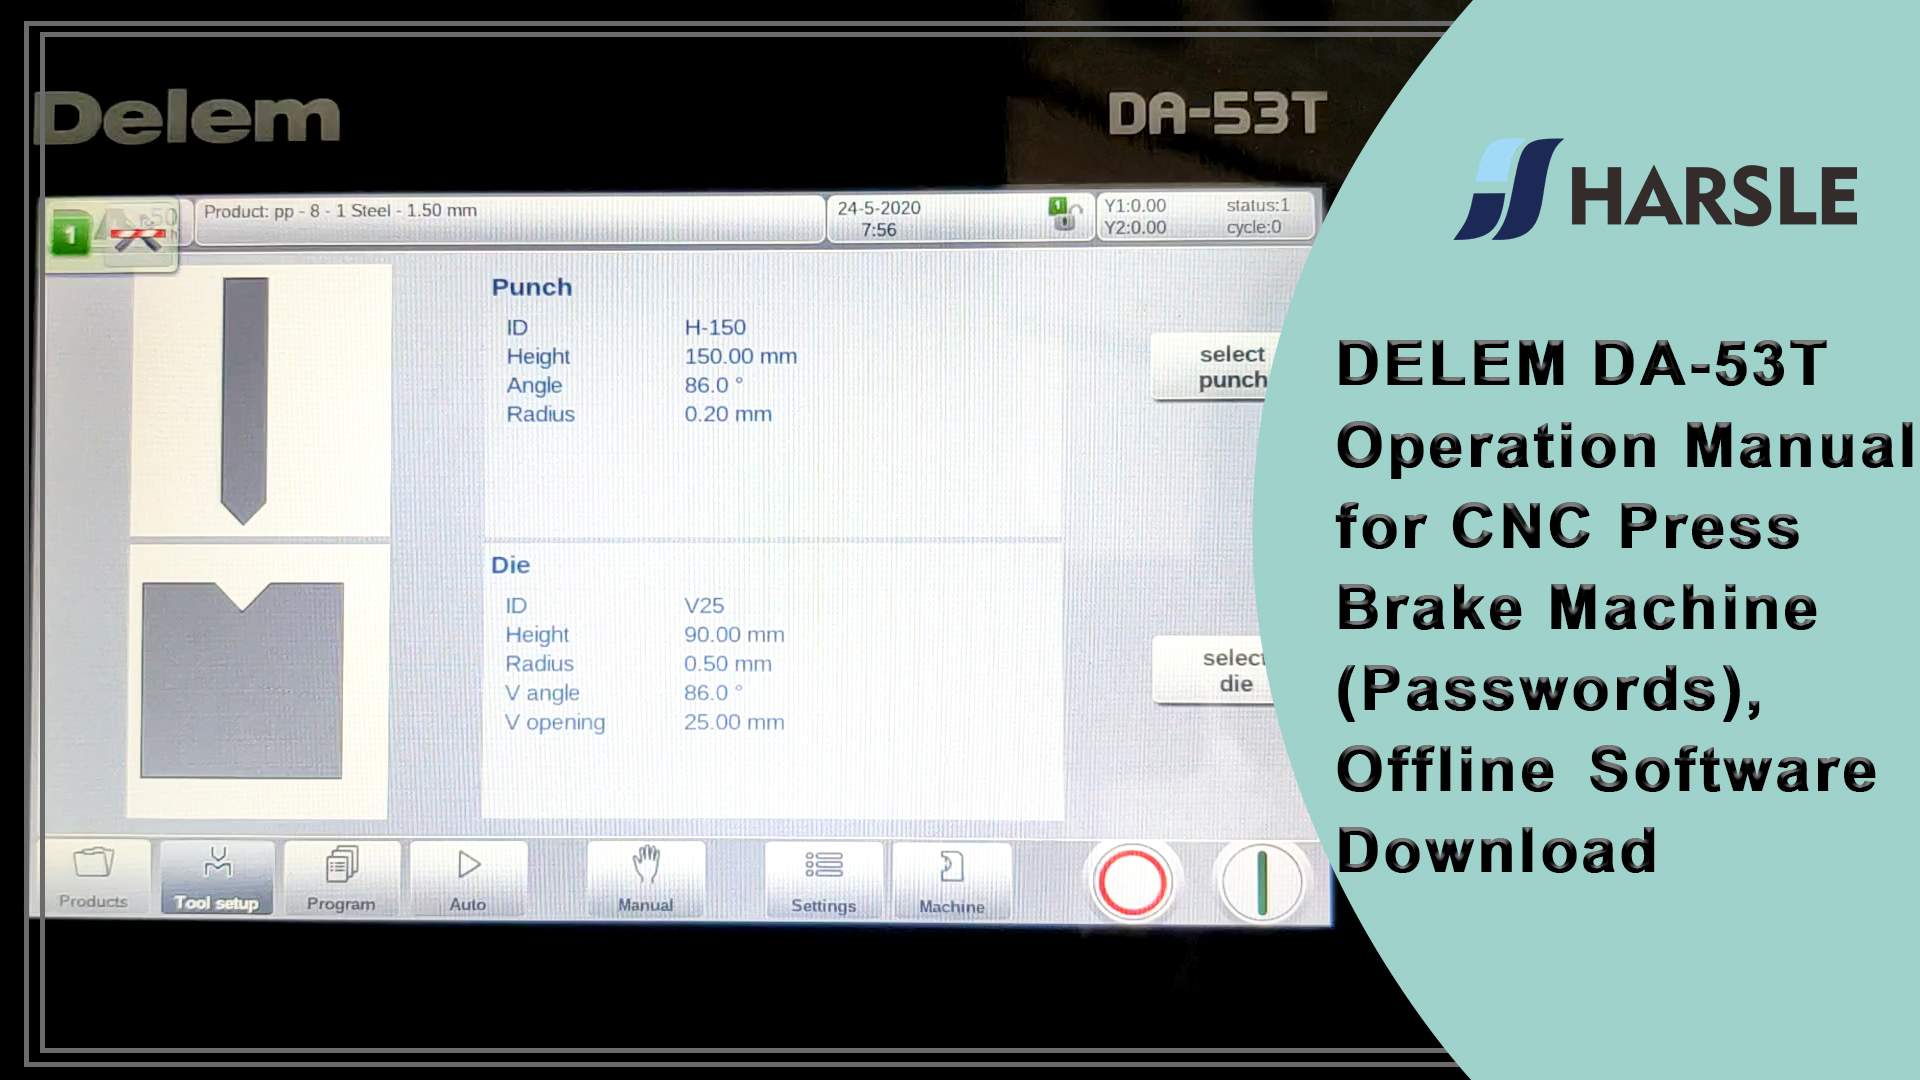 DELEM DA-53T Manuale operativo per pressa piegatrice CNC (password), download del software offline